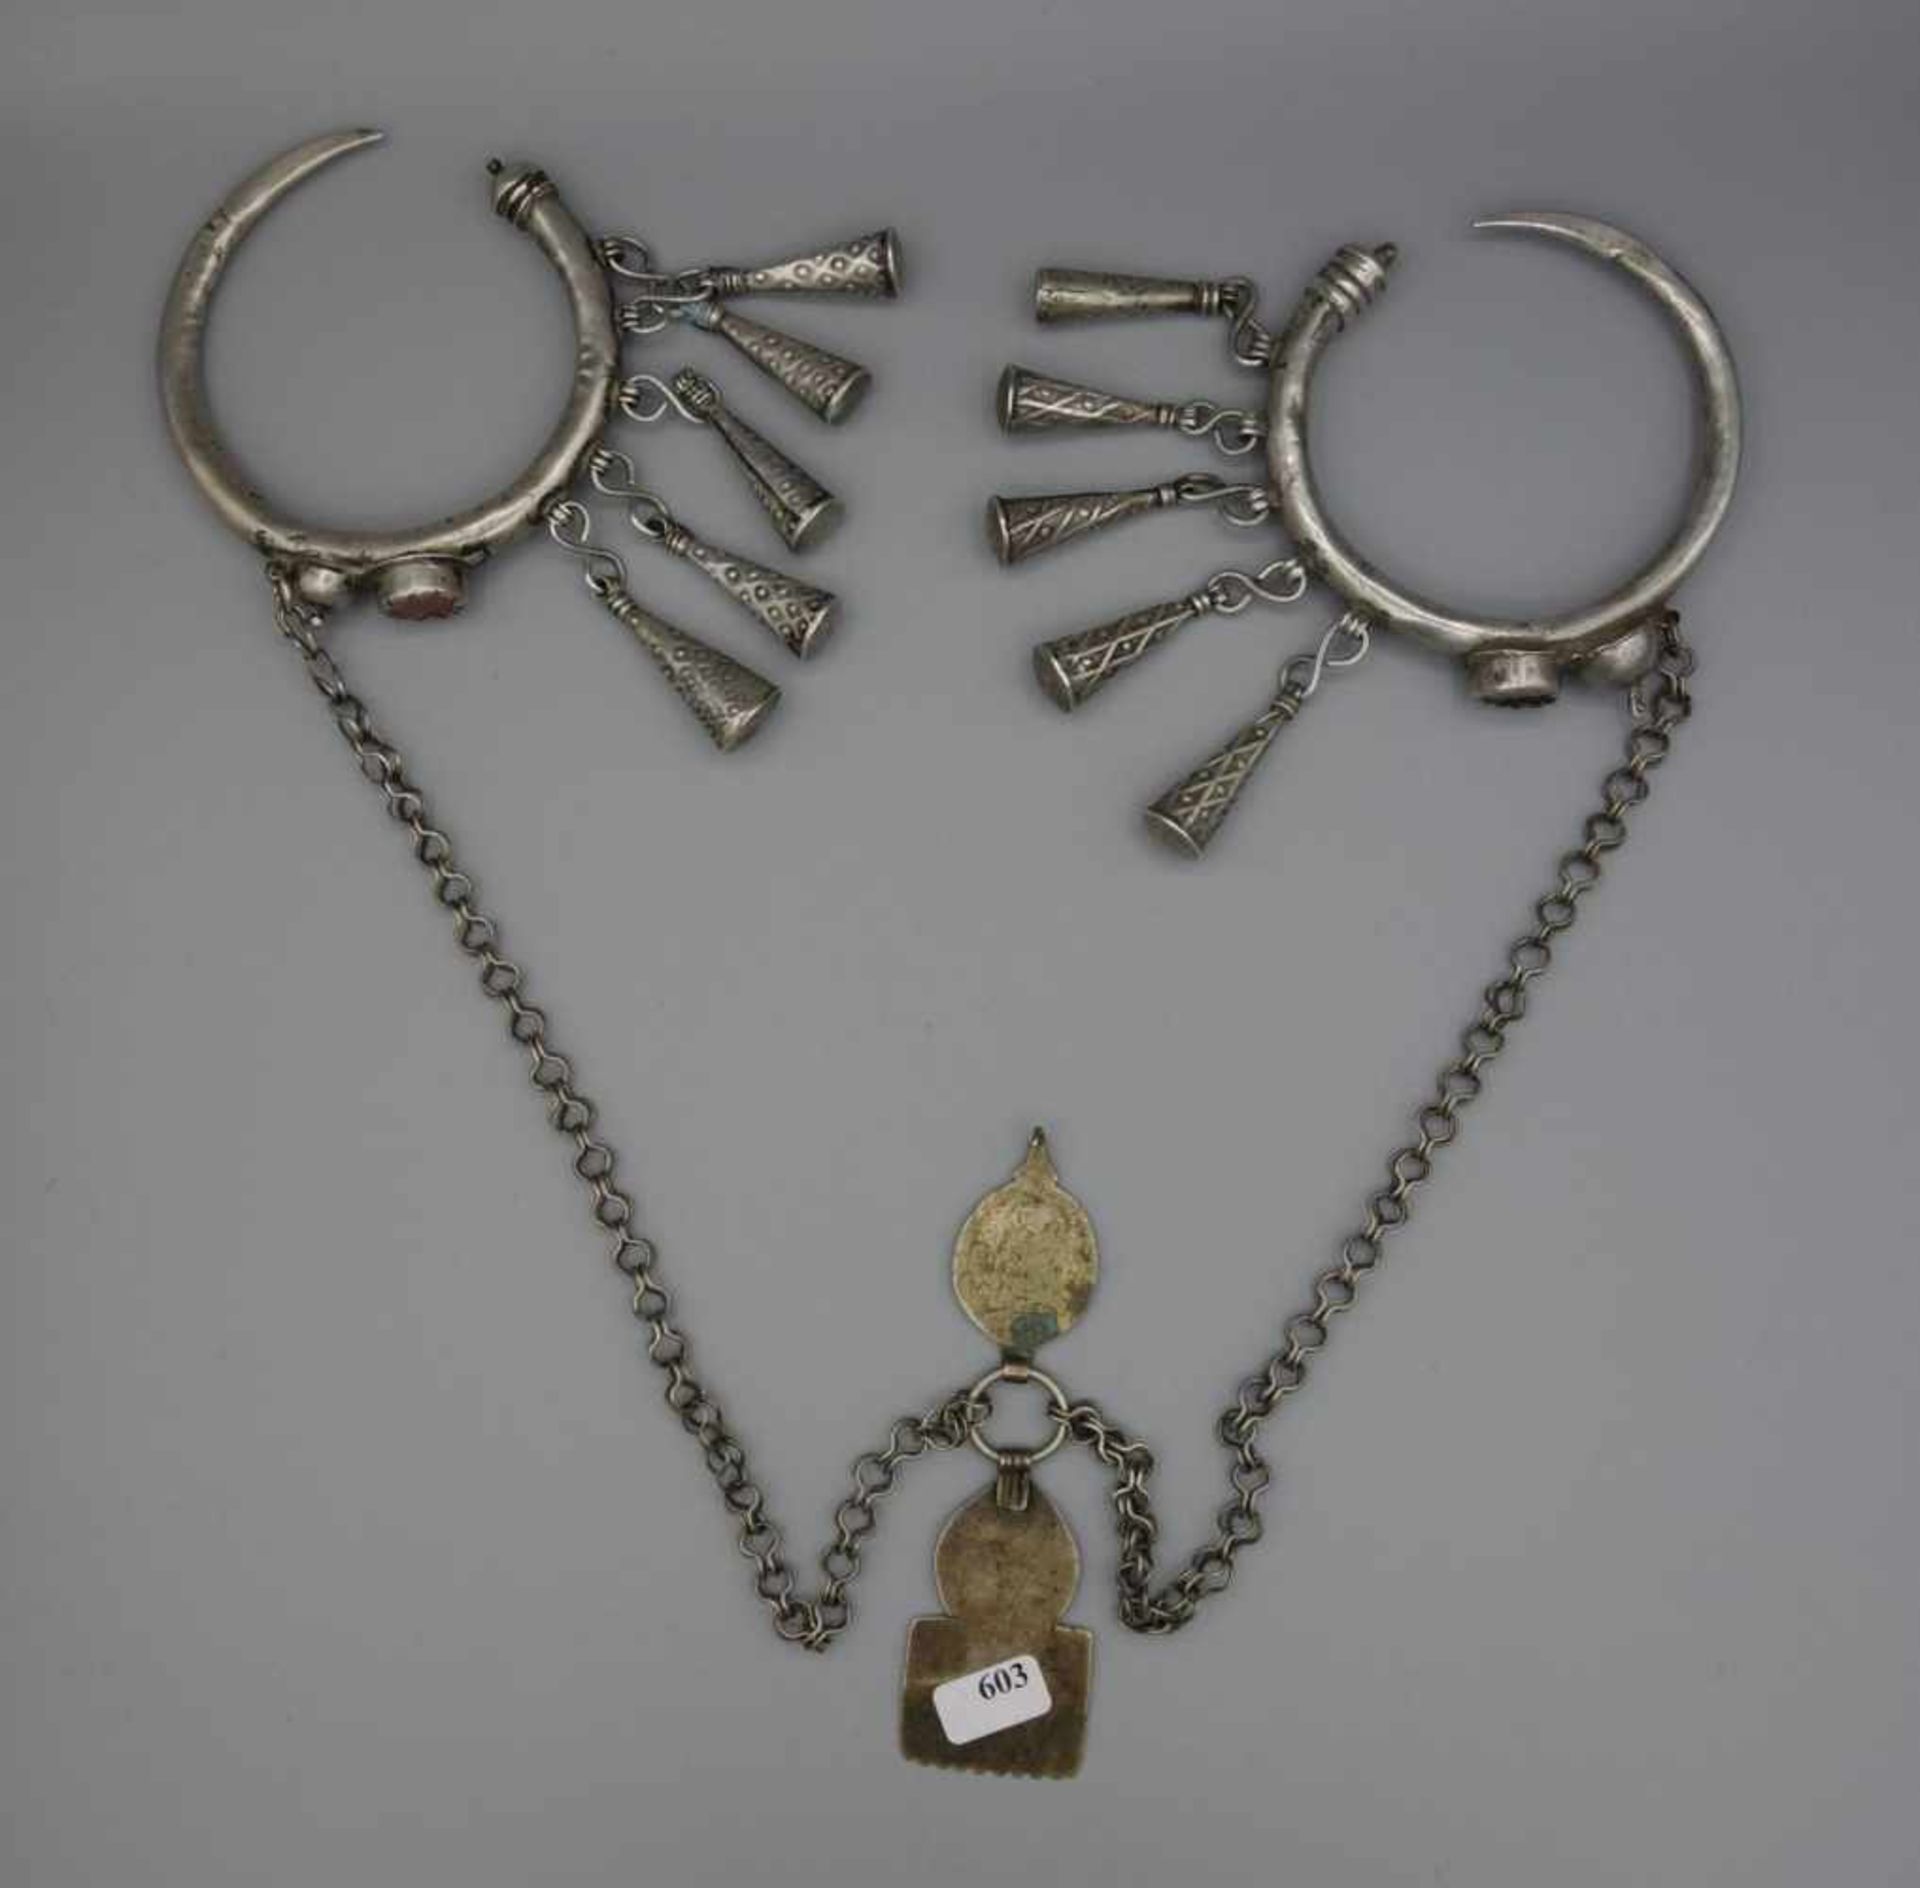 BERBER-SCHMUCK: FIBELN UND KETTE, Marokko. Silber, Gewicht: 145 g. Kette mit Fibeln. In der Mitte - Image 3 of 3